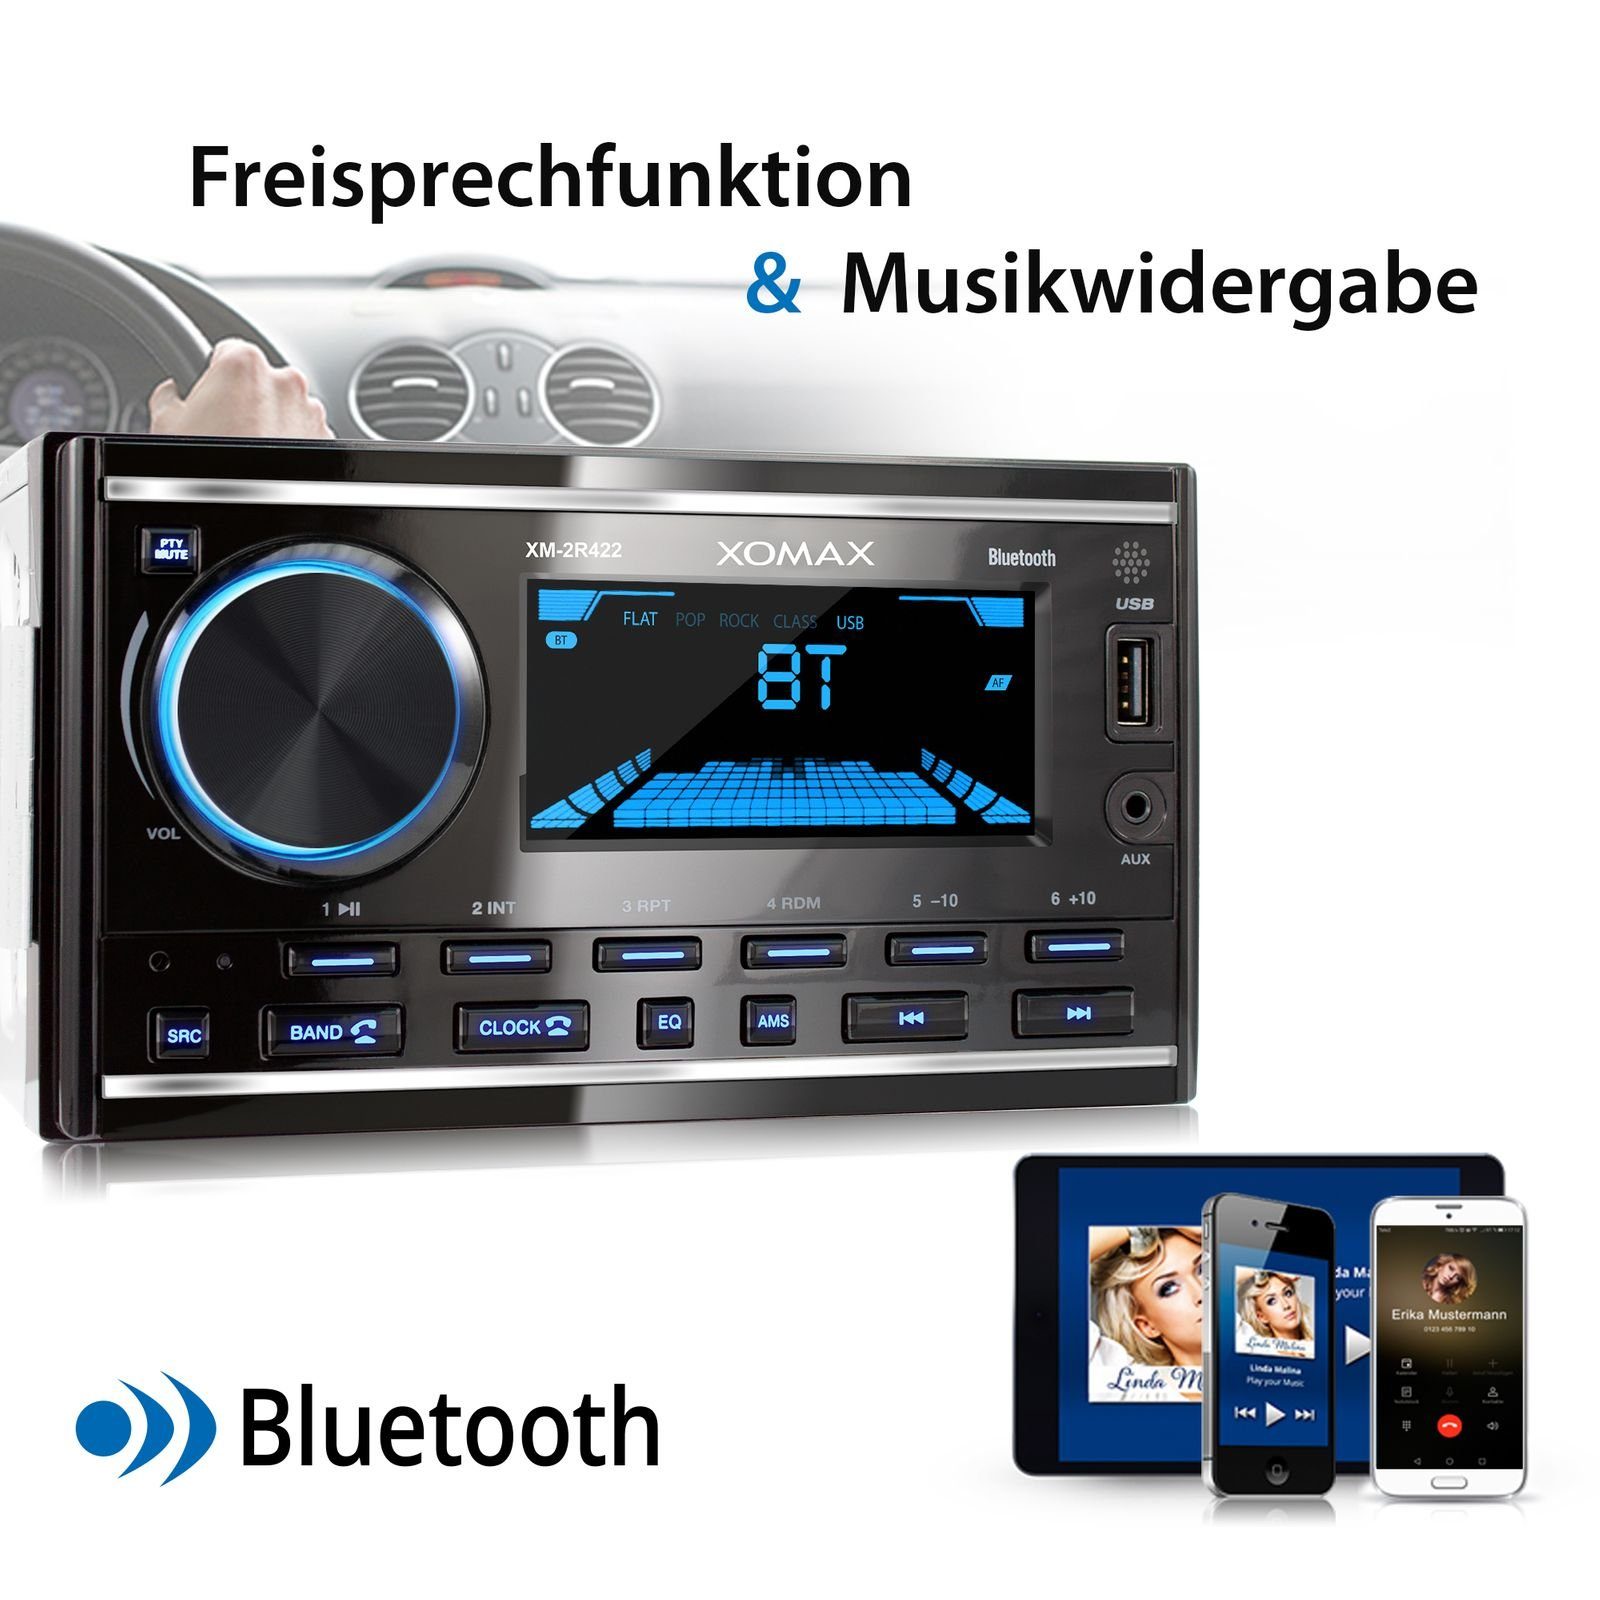 2 mit Autoradio DIN Autoradio Bluetooth AUX-IN, XOMAX Freisprecheinrichtung, USB,